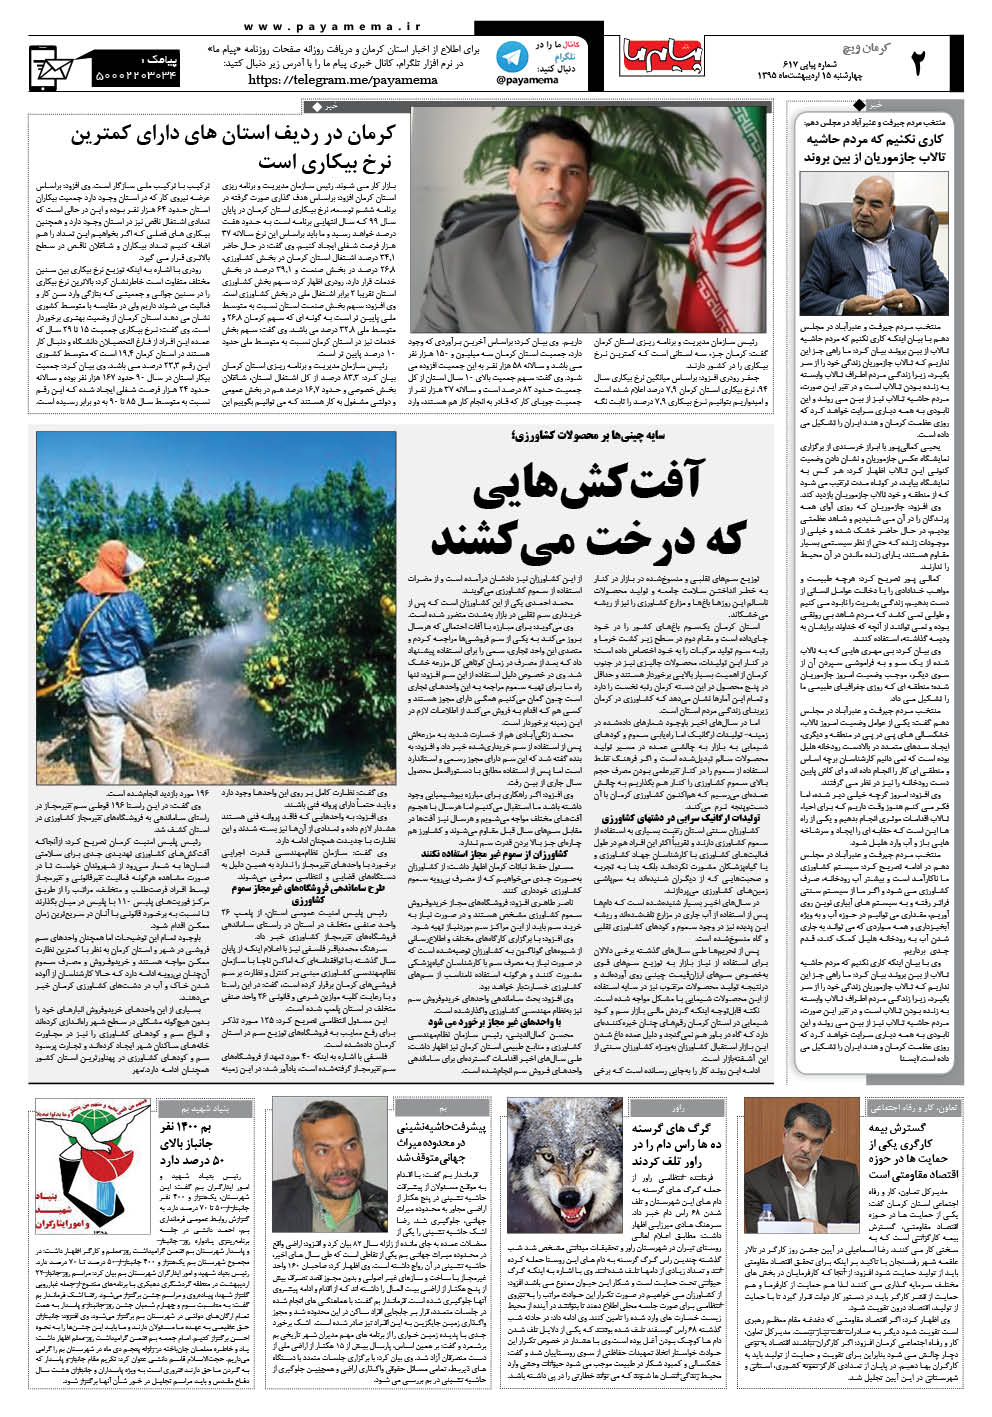 صفحه کرمان ویچ شماره صفحه اول روزنامه پیام ما